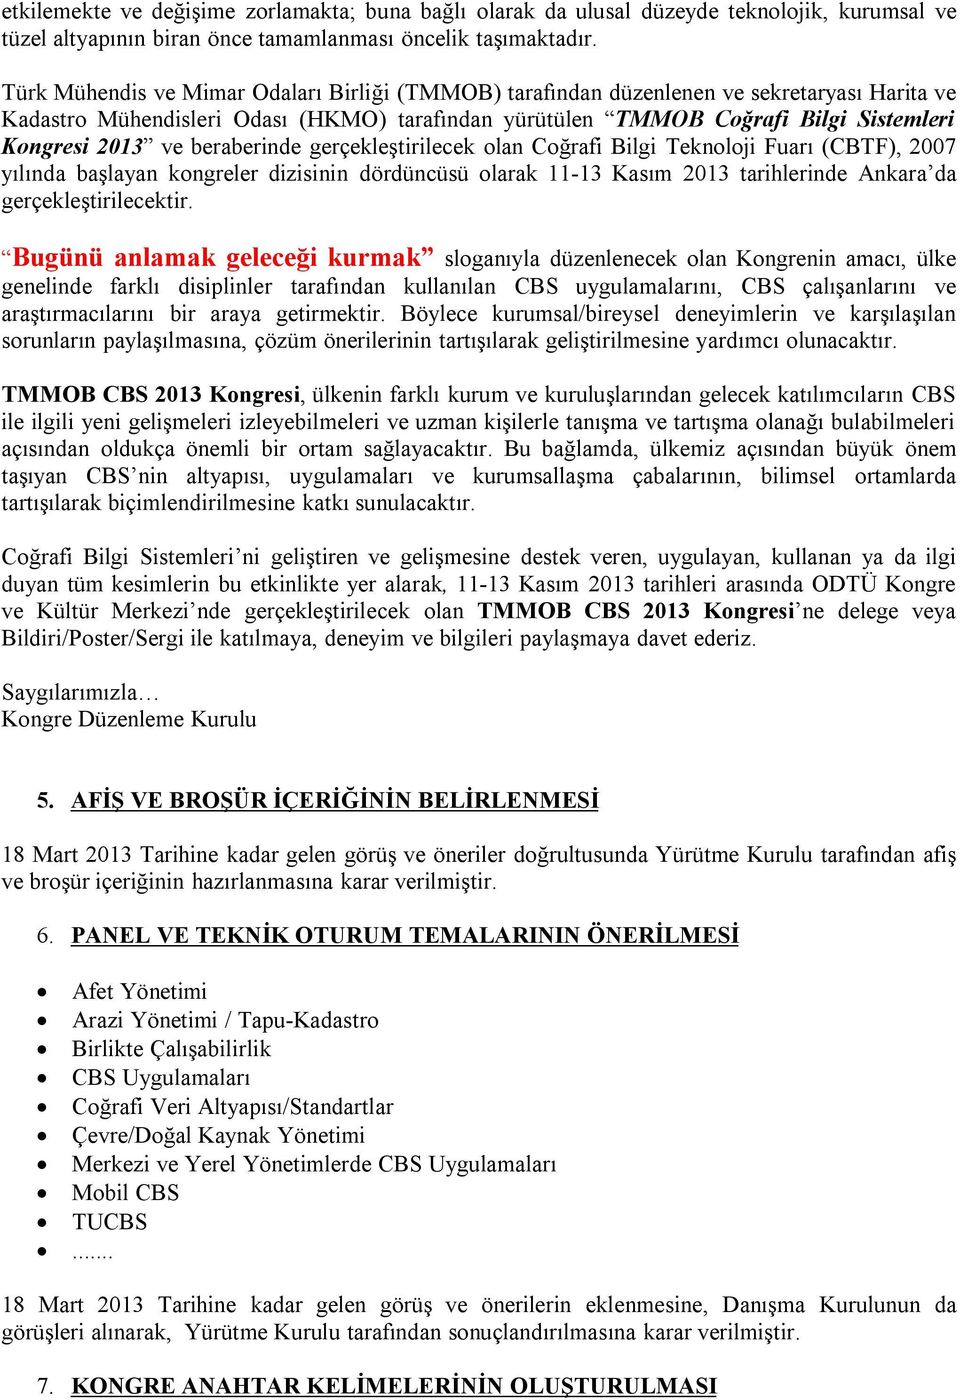 beraberinde gerçekleştirilecek olan Coğrafi Bilgi Teknoloji Fuarı (CBTF), 2007 yılında başlayan kongreler dizisinin dördüncüsü olarak 11-13 Kasım 2013 tarihlerinde Ankara da gerçekleştirilecektir.